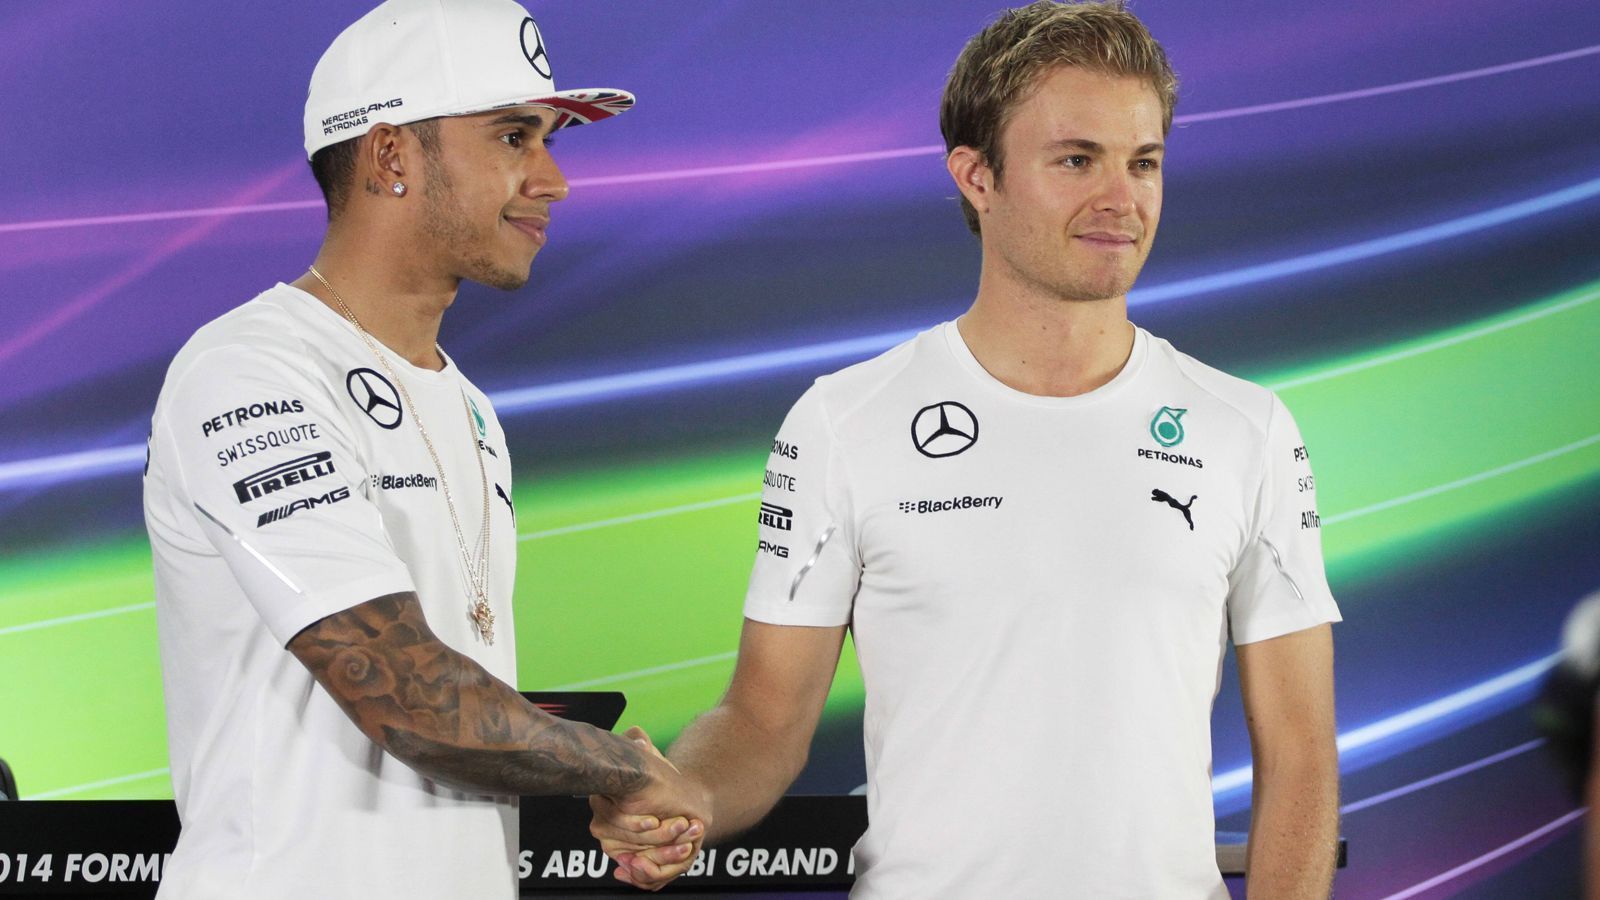 
                <strong>Nico Rosberg</strong><br>
                Dass Hamilton und Rosberg, die sich in der Formel 1 einst nervenzerreißende Duelle lieferten, jetzt trotz der weiter bestehenden sportlichen Rivalität Seite an Seite stehen im Kampf für den Klimaschutz, wertet der Deutsche als großen Erfolg: "Ich denke, das ist wirklich cool, und ich habe mich wirklich gefreut, als Lewis in die Extreme E eingestiegen ist, weil er eine große Reichweite hat." Zwar treten die Teamchefs auf der Strecke gegeneinander an, "aber wir tun uns gleichzeitig auch zusammen, um gemeinsam gegen den Klimawandel zu kämpfen", so Rosberg.
              